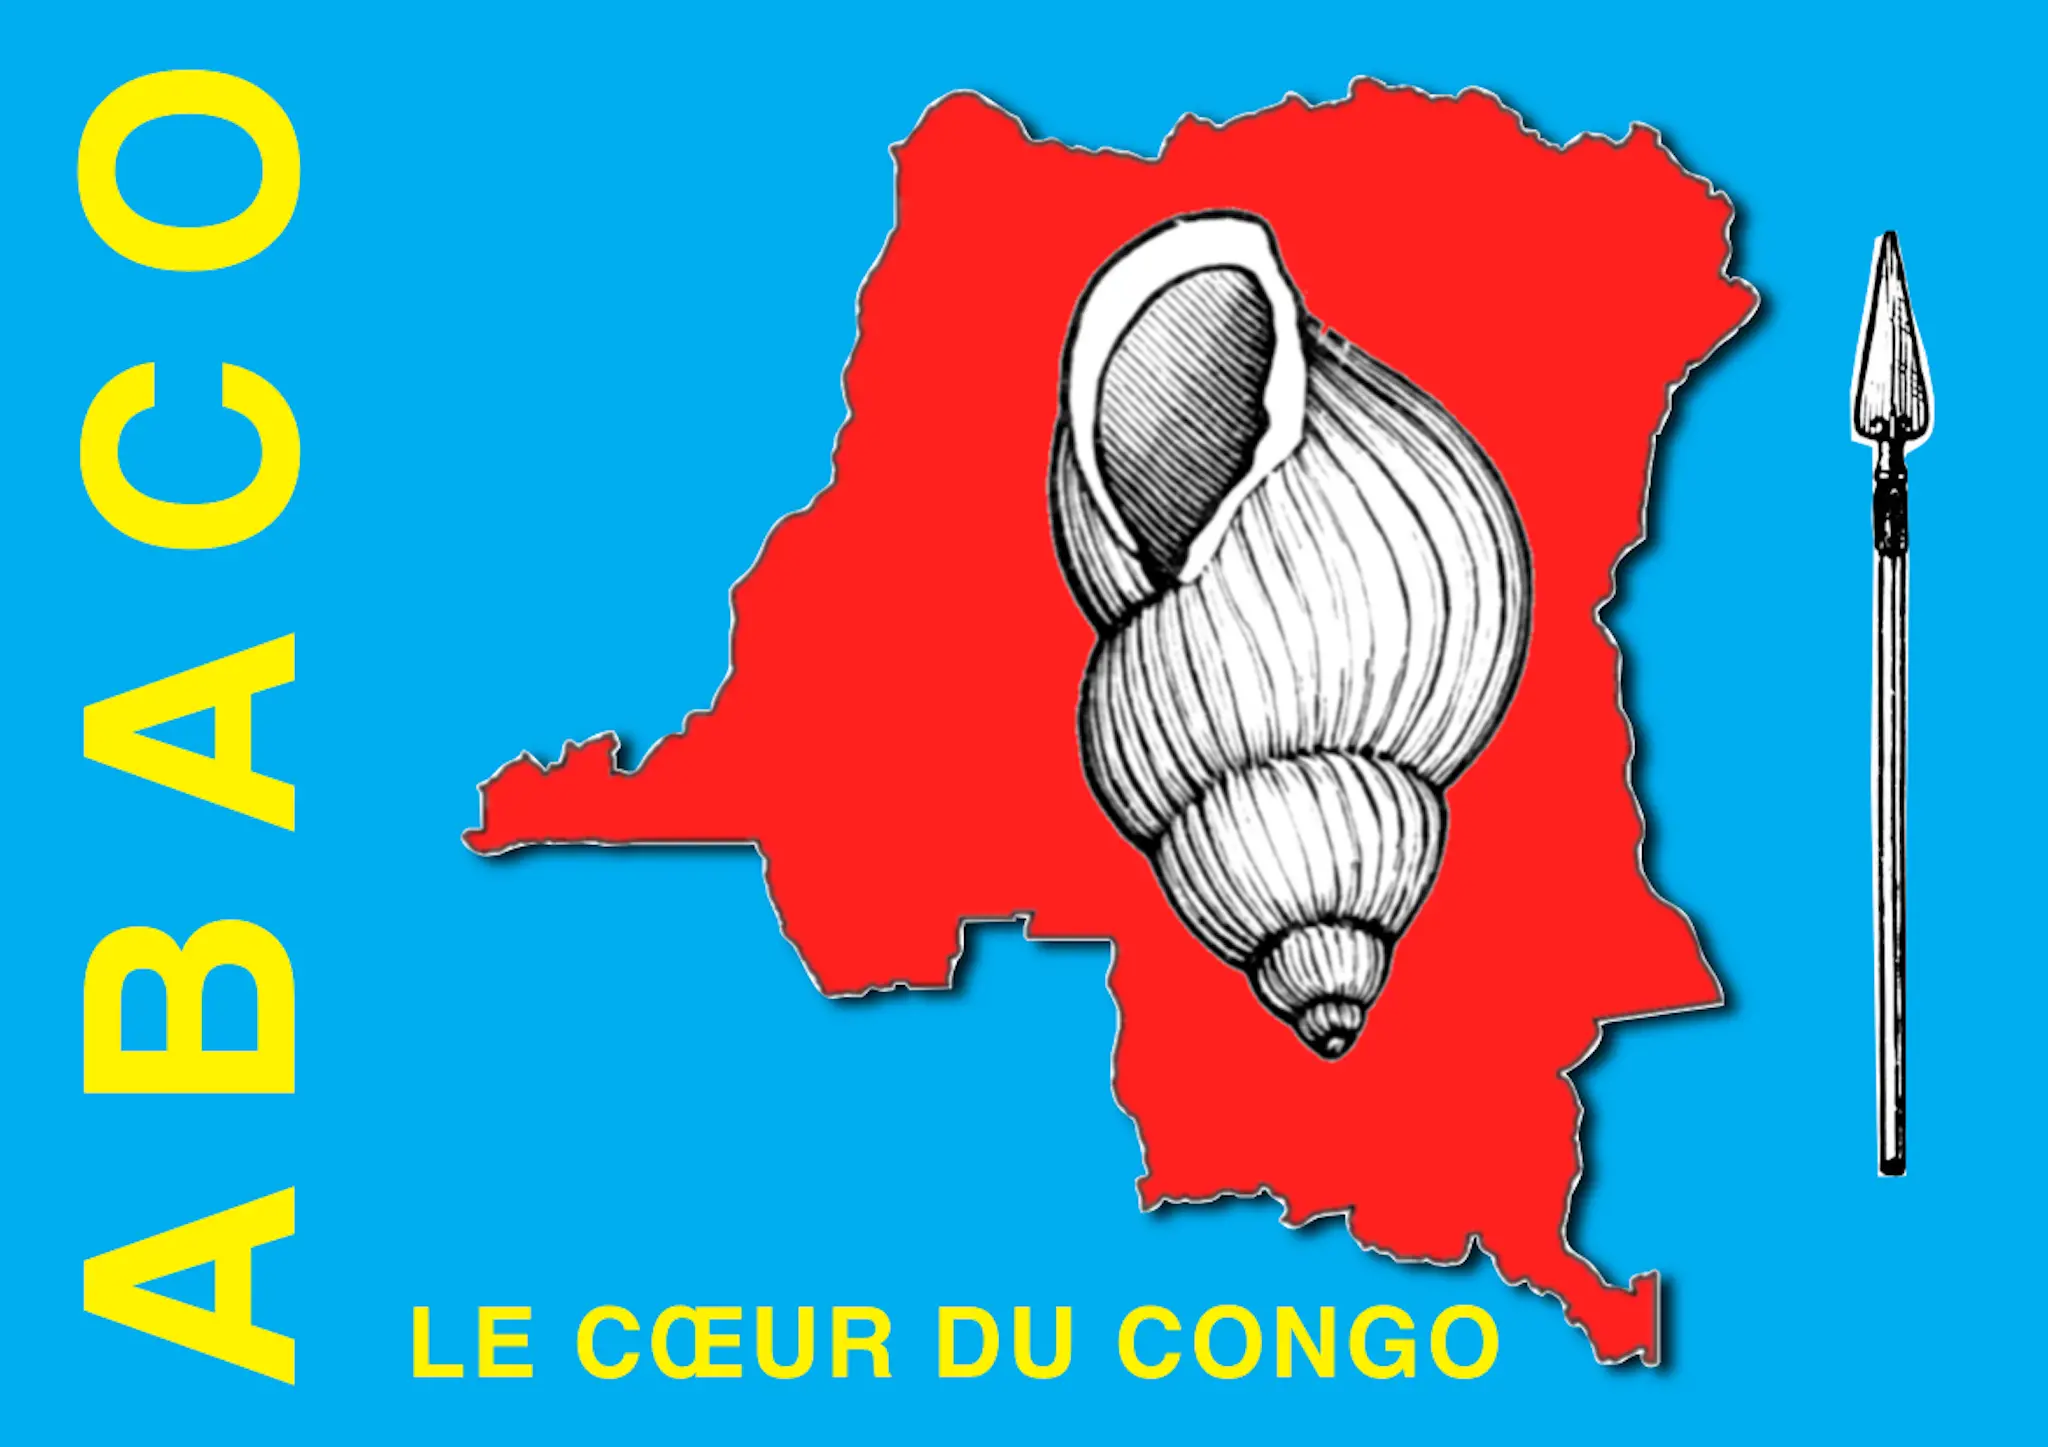 Communiqué de presse n° 20180114/002 sur un sursaut républicain et patriotique en RDC